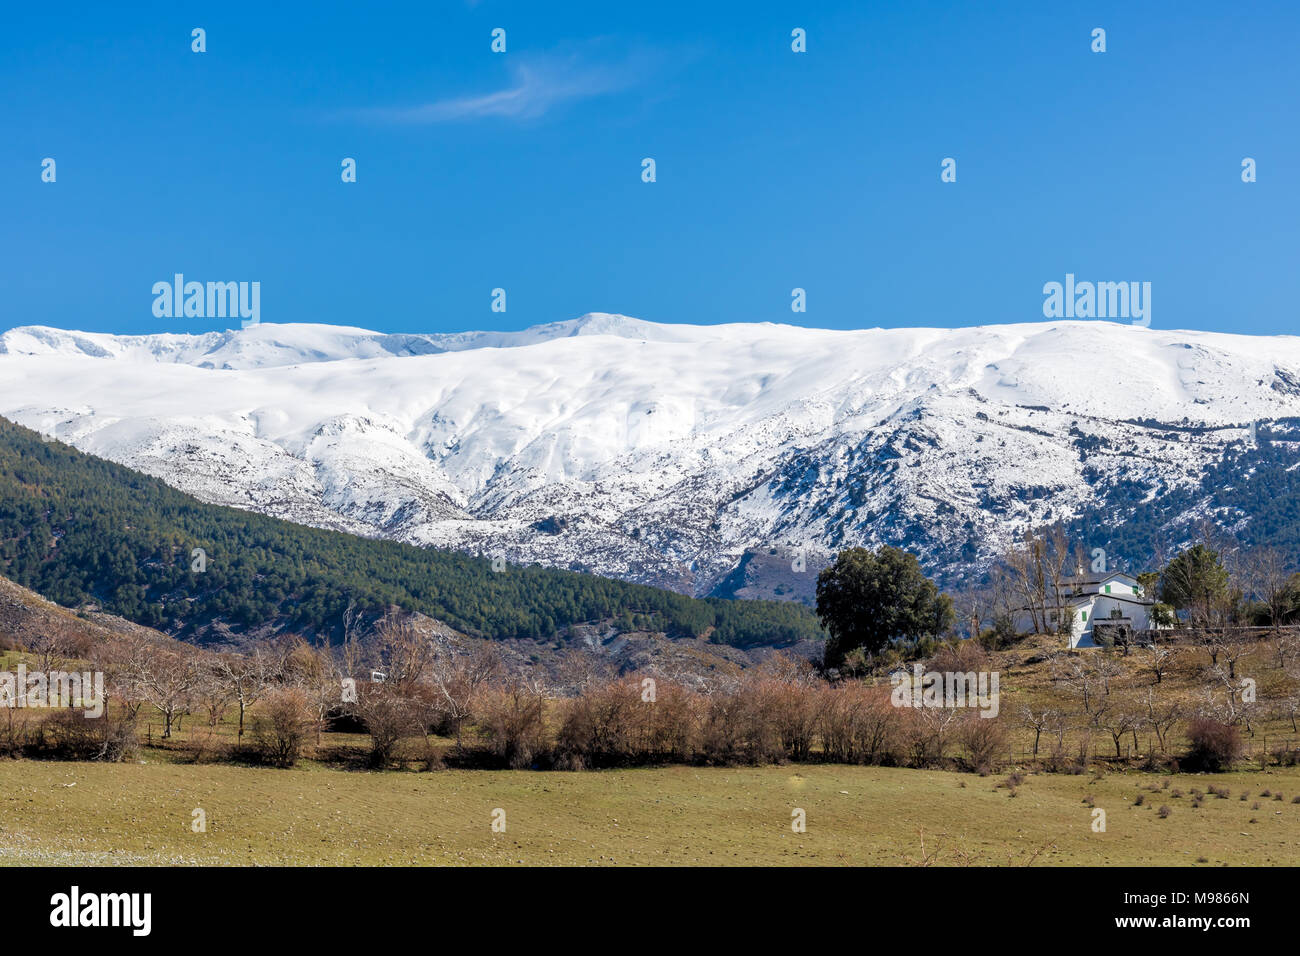 Un hermoso paisaje mediterráneo con montañas nevadas en el fondo. Foto de stock